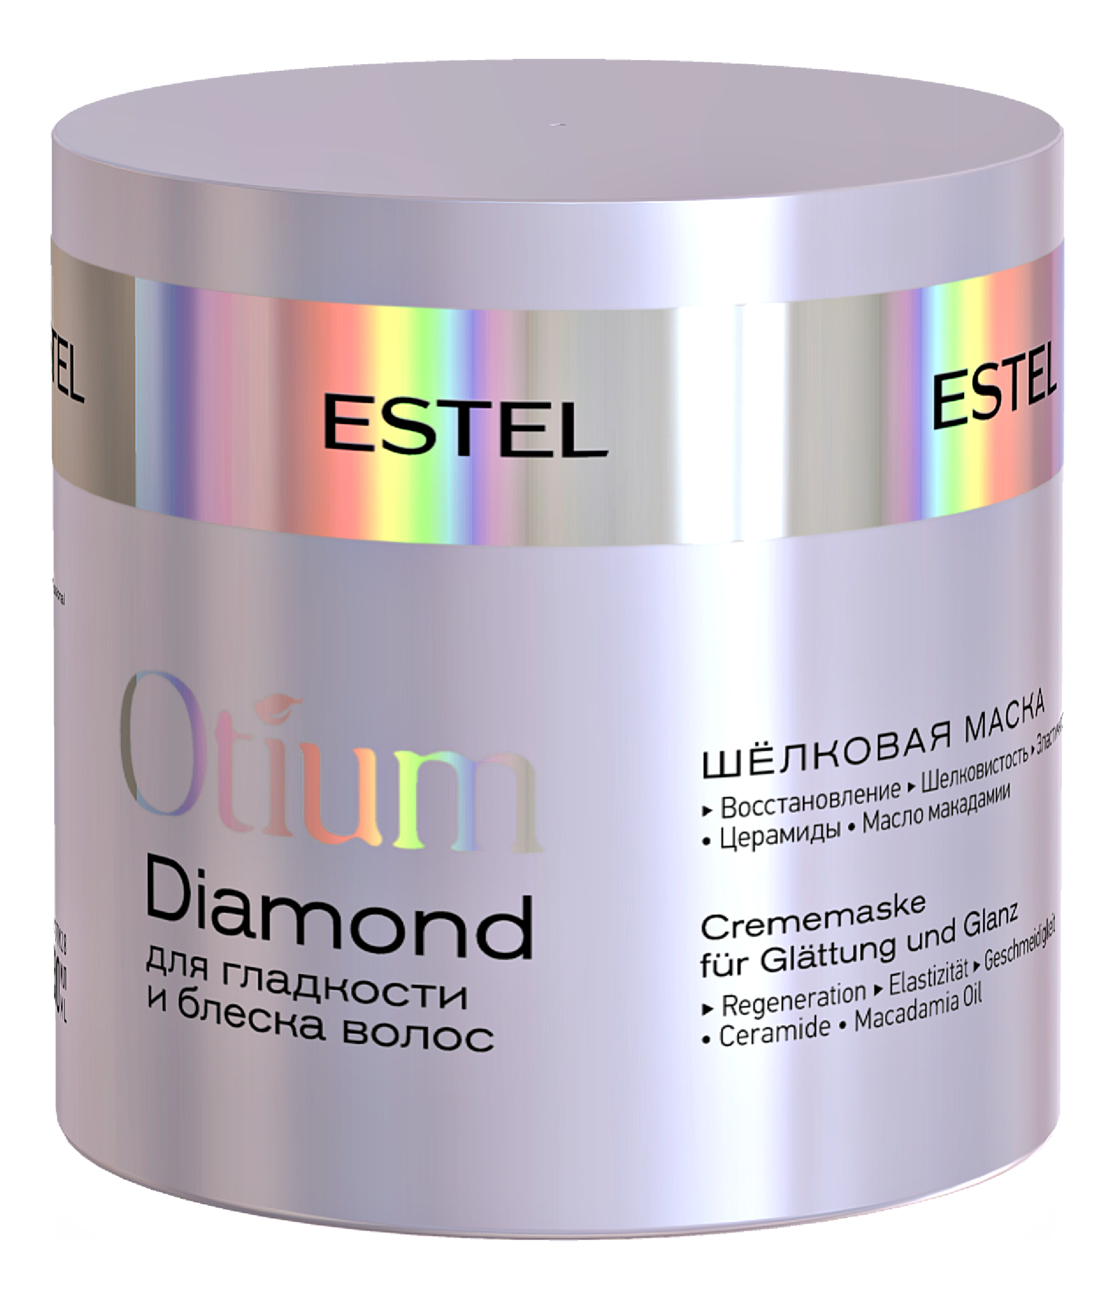 Шелковая маска для гладкости и блеска волос Otium Diamond 300мл маска шелковая для гладкости и блеска волос otium diamond estel эстель 300мл